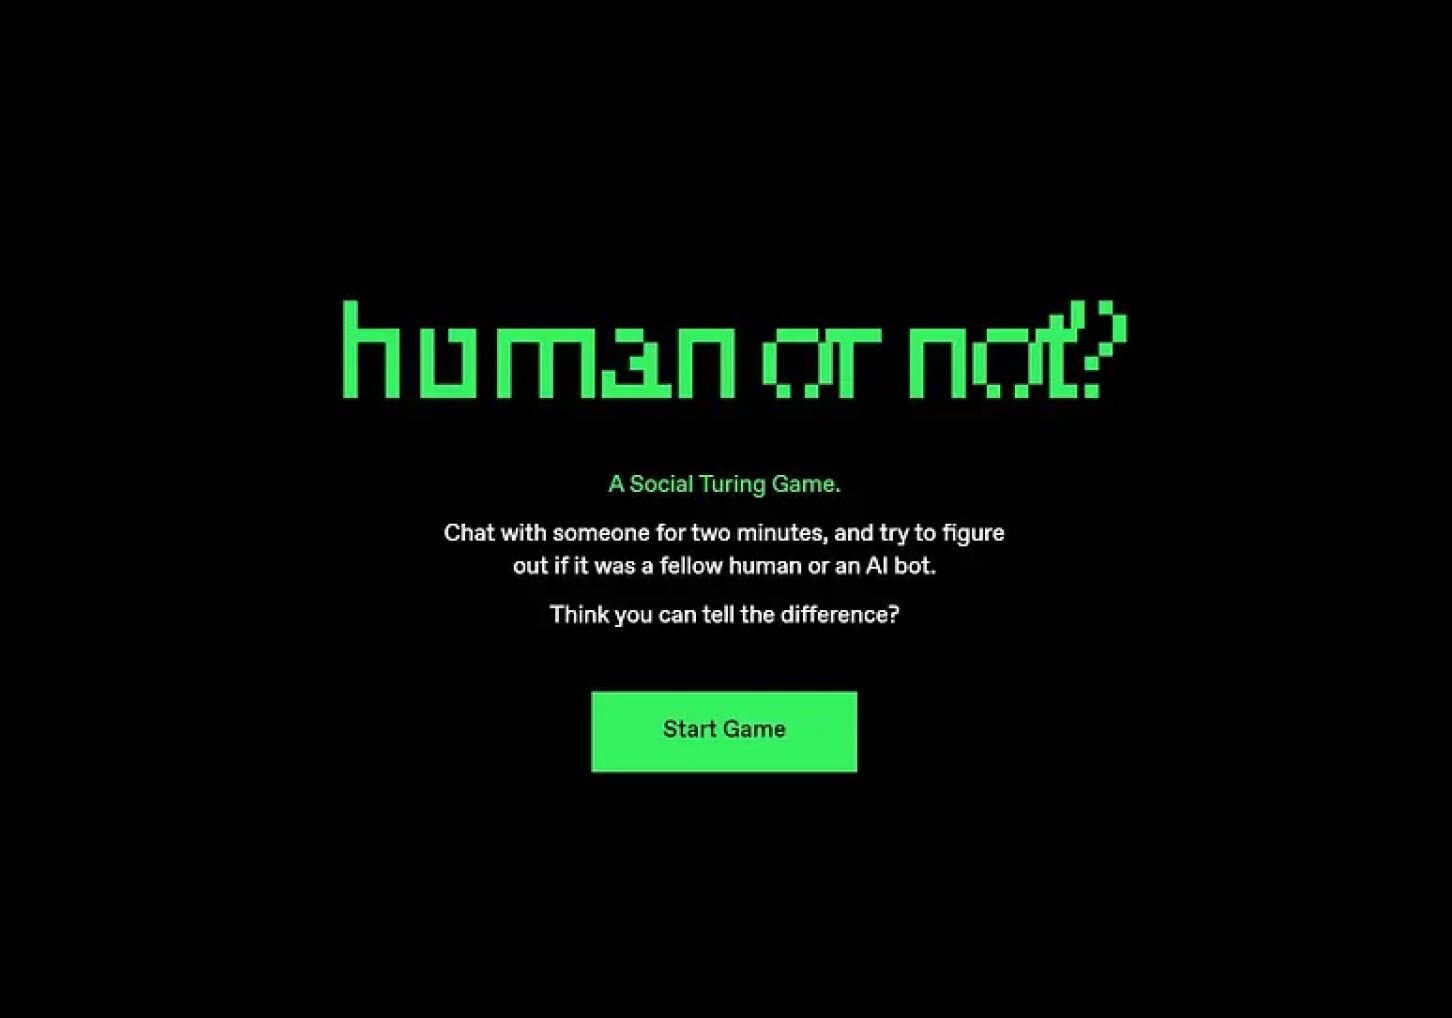 Humanornot.ai main page